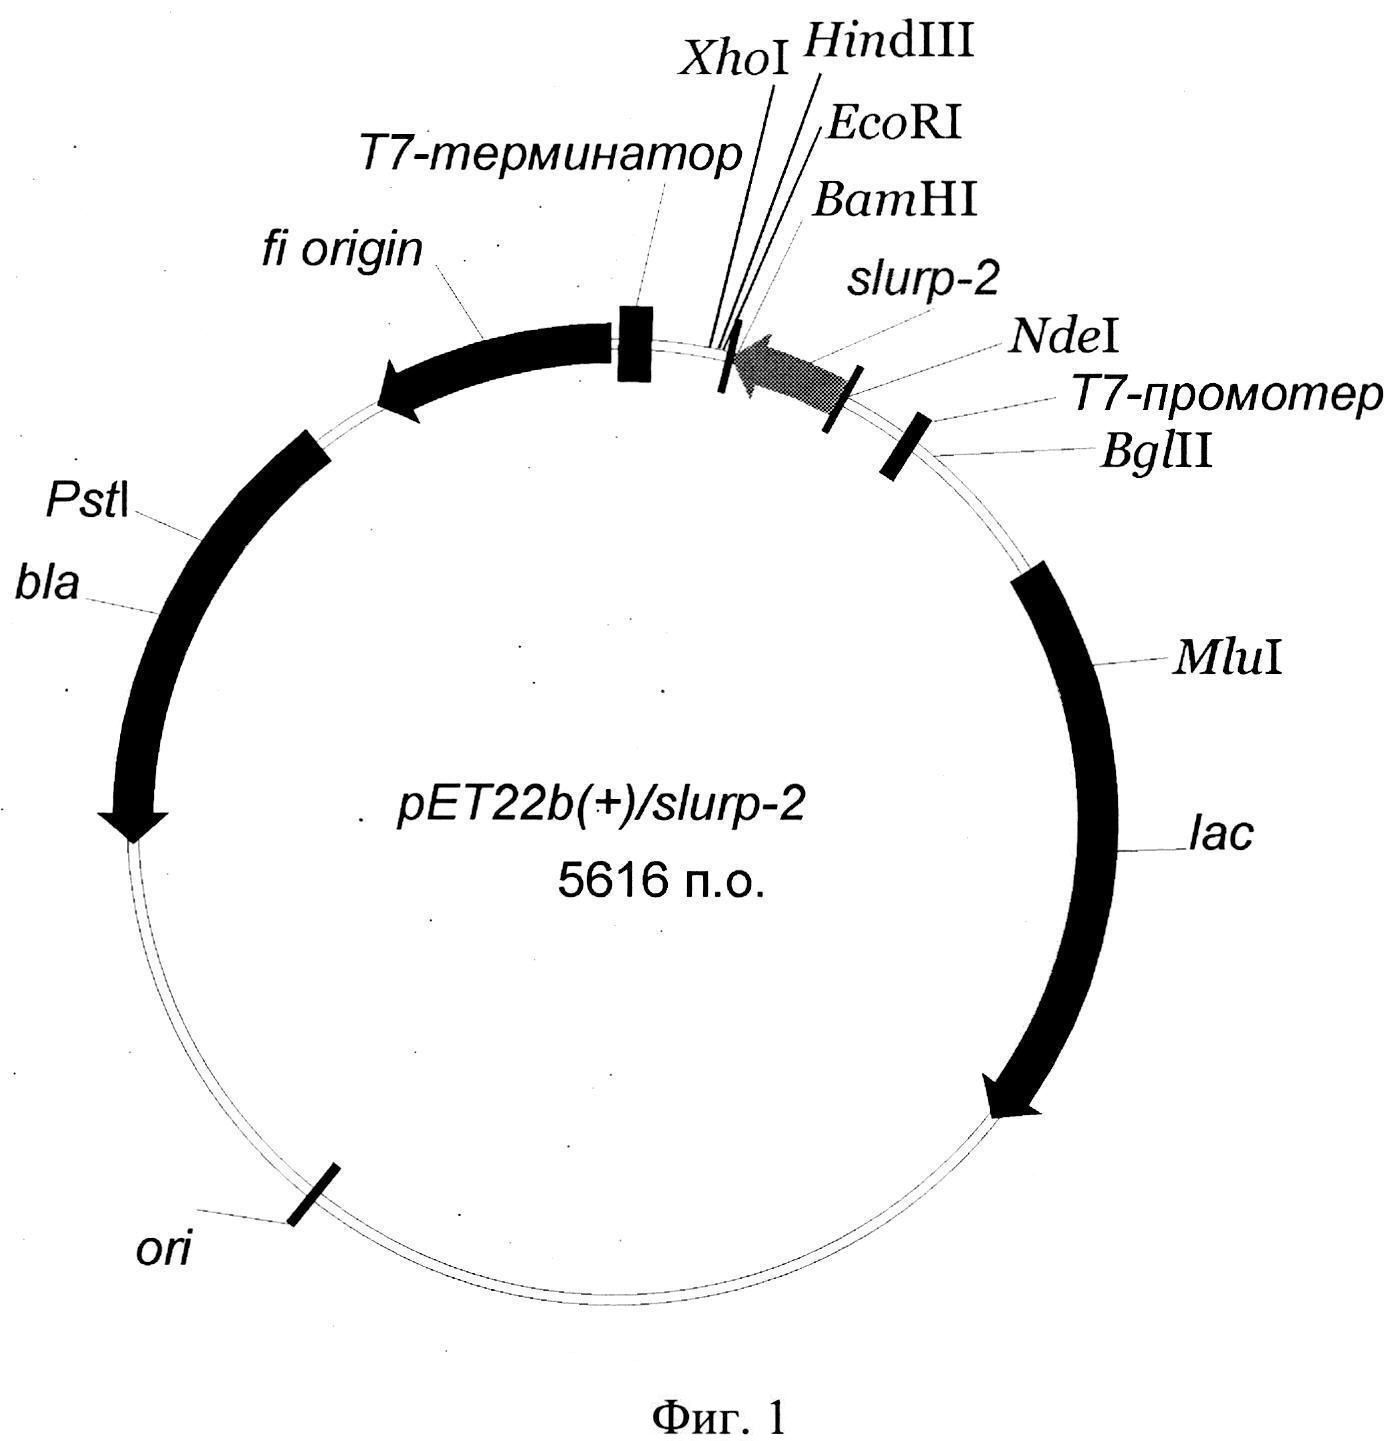 РЕКОМБИНАНТНАЯ ПЛАЗМИДНАЯ ДНК pET22b(+)/slurp-2, КОДИРУЮЩАЯ БЕЛОК SLURP-2, И ШТАММ БАКТЕРИЙ Escherichia coli BL21(DE3) pET22b(+)/slurp-2- ПРОДУЦЕНТ БЕЛКА SLURP-2 ЧЕЛОВЕКА